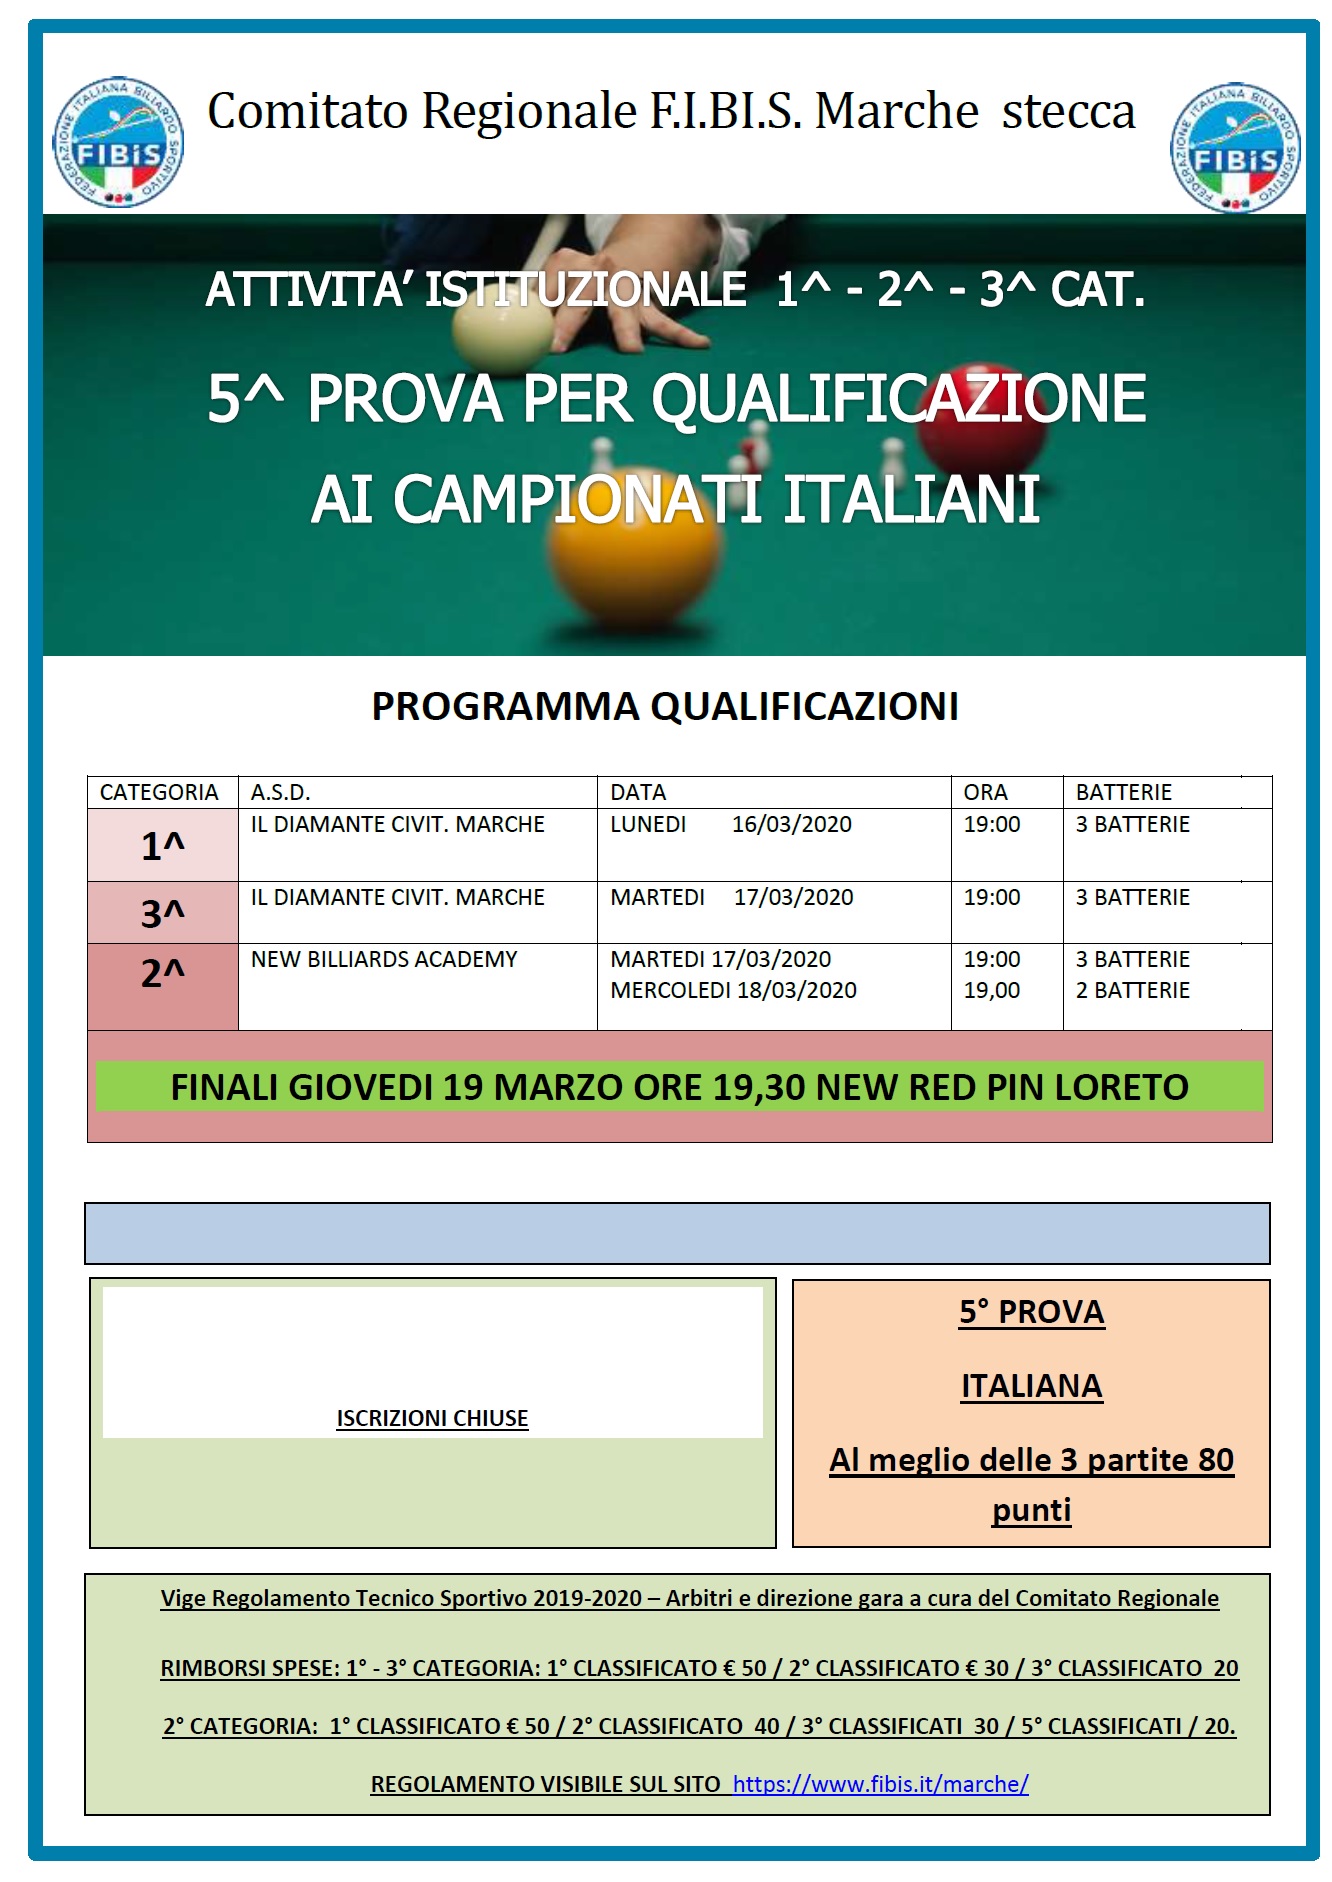 5^ Prova per la Qualificazione ai Campionati Italiani